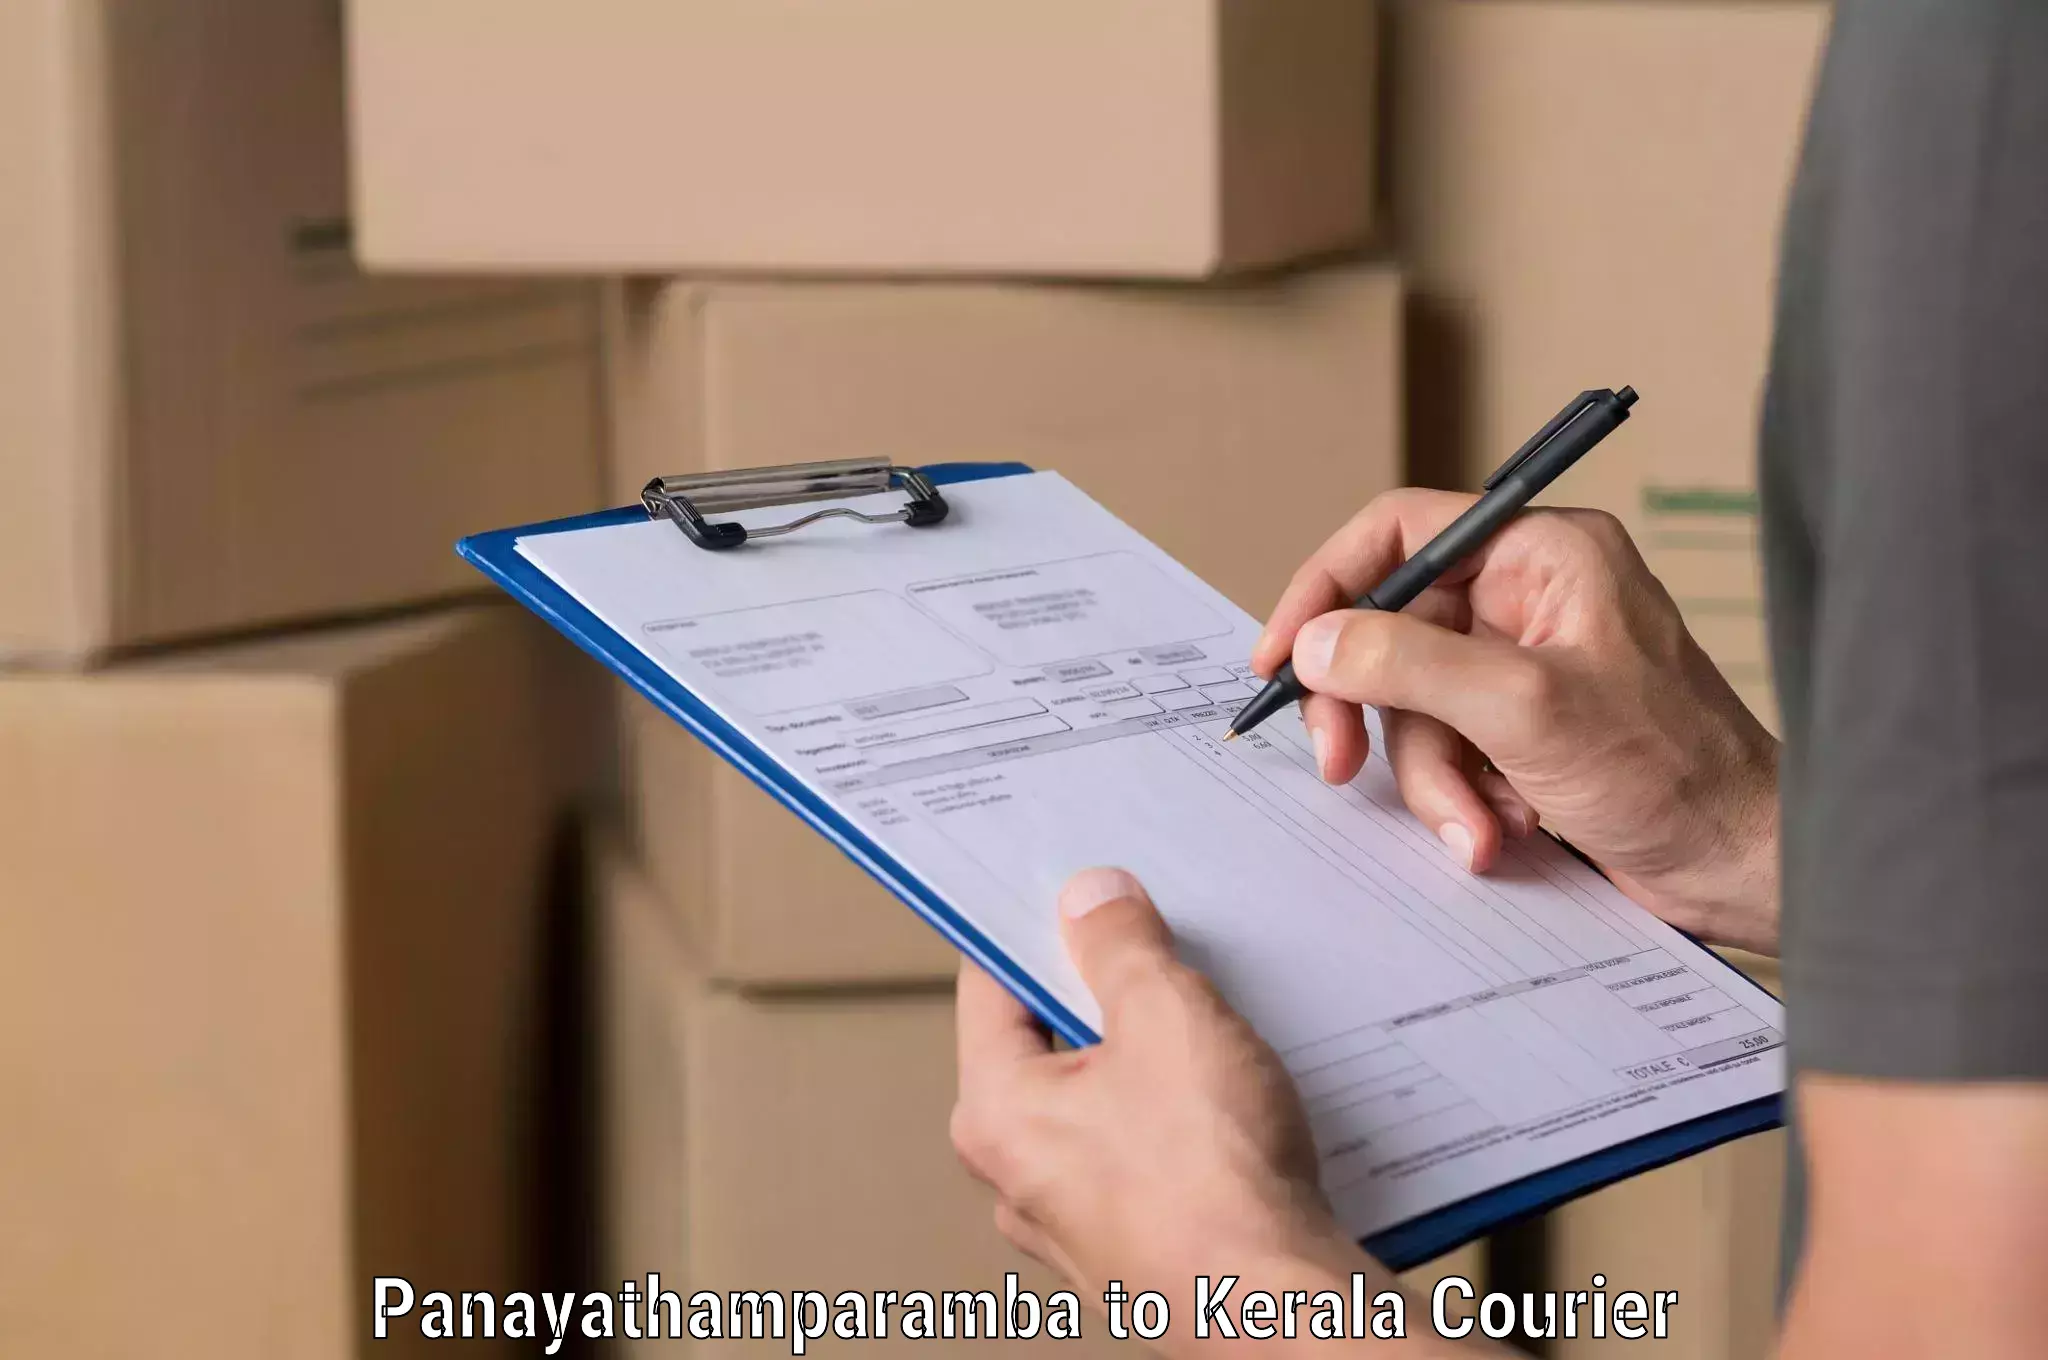 Smart parcel delivery Panayathamparamba to Kerala